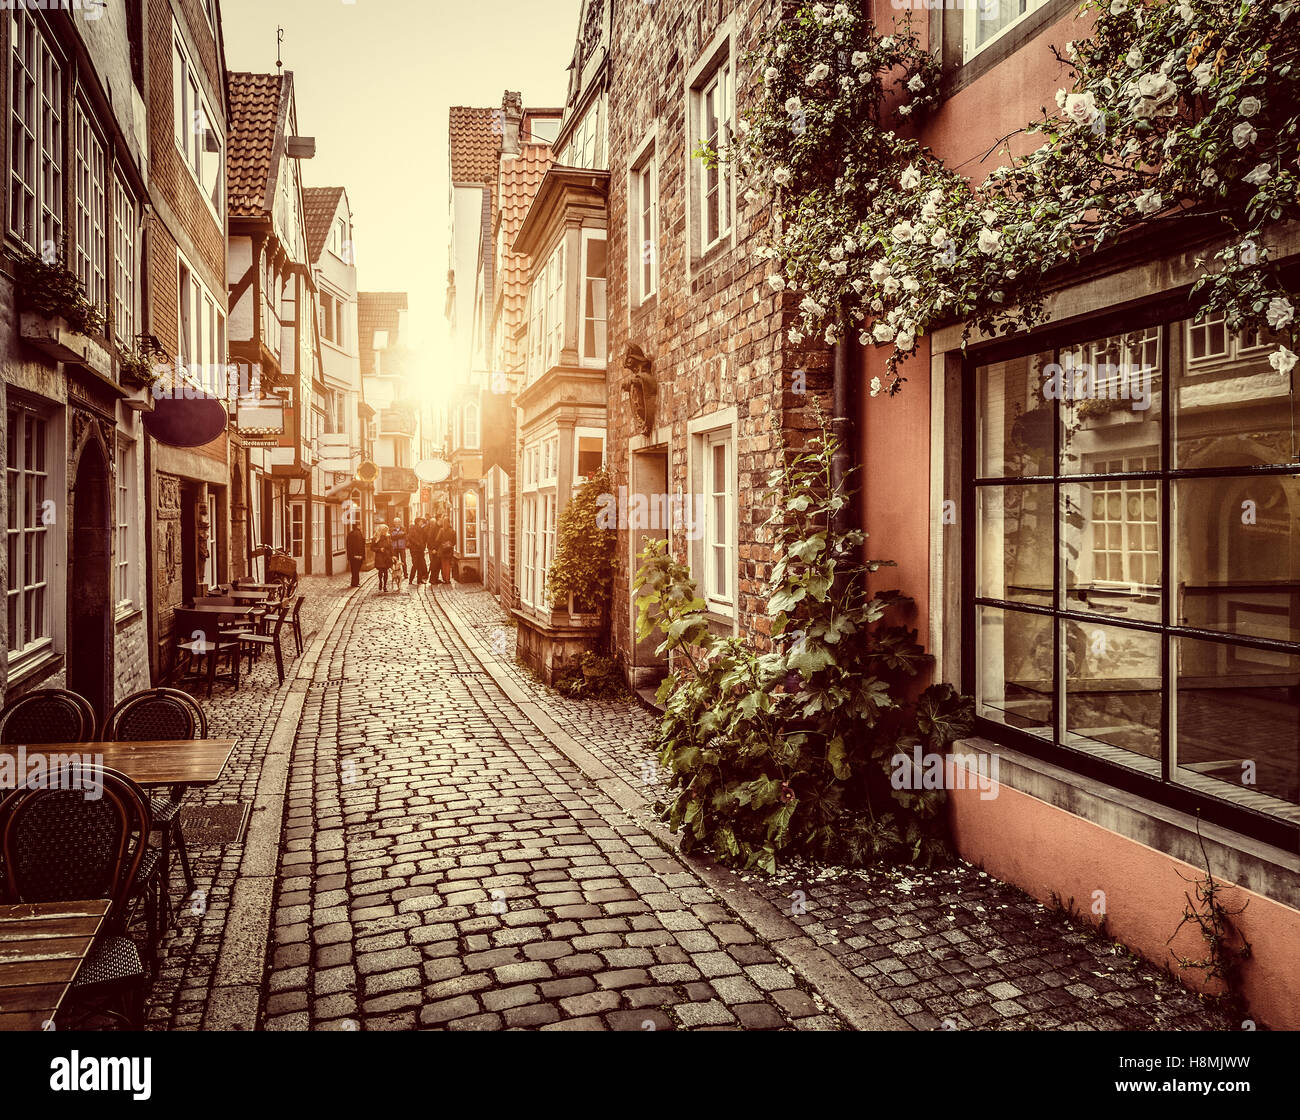 Bezaubernde Straßenszene in eine alte Stadt in Europa bei Sonnenuntergang mit Pastell getönt Retro-Vintage-Filter und Objektiv-Flare-Sonnenlicht-Effekt Stockfoto